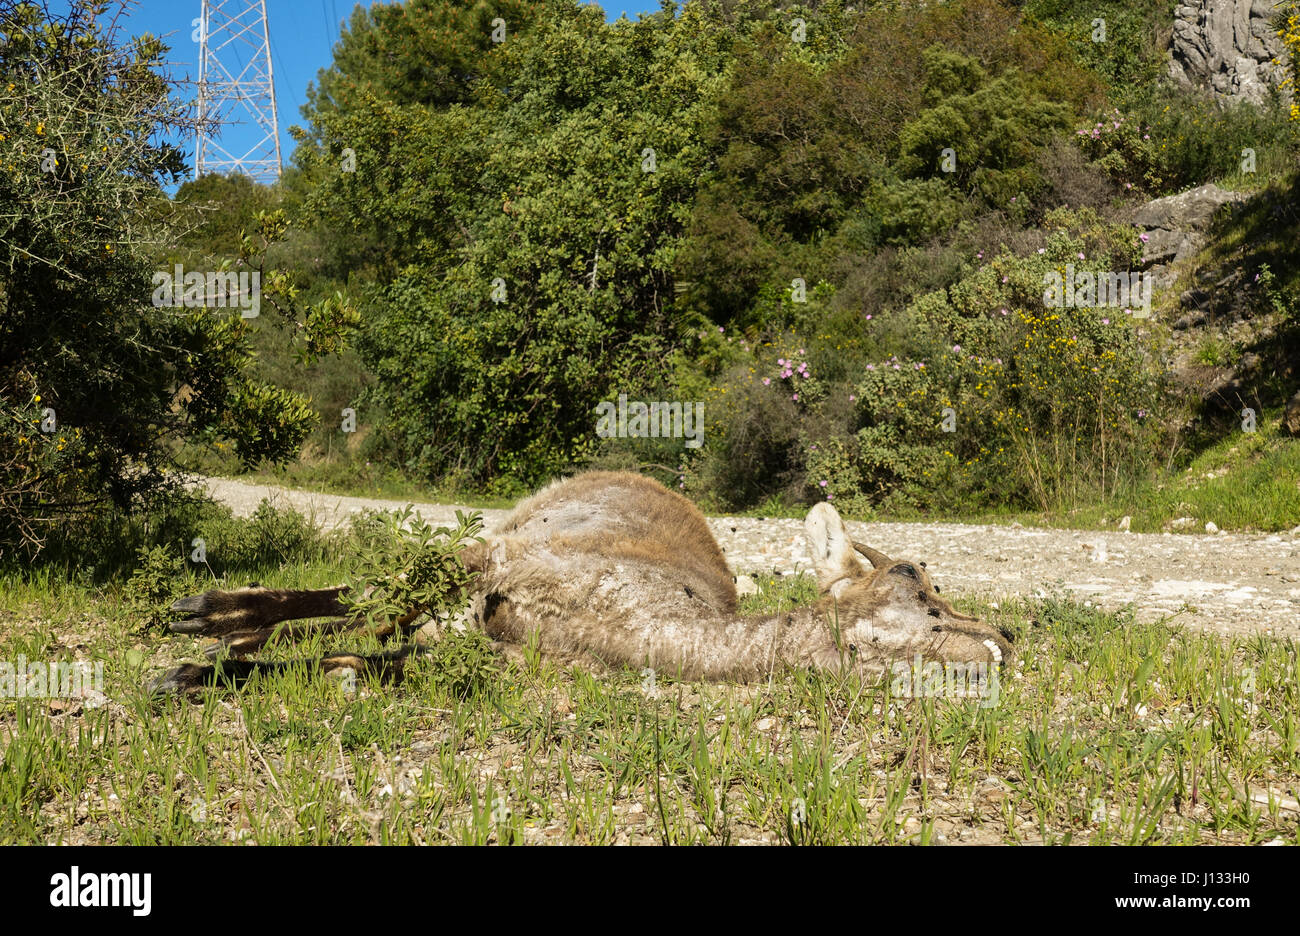 Un giovane iberico ibex, Spagnolo ibex, Spagnolo capra selvatica, o iberico stambecco (Capra pyrenaica) che giace morto lungo la strada. Andalusia, Spagna Foto Stock